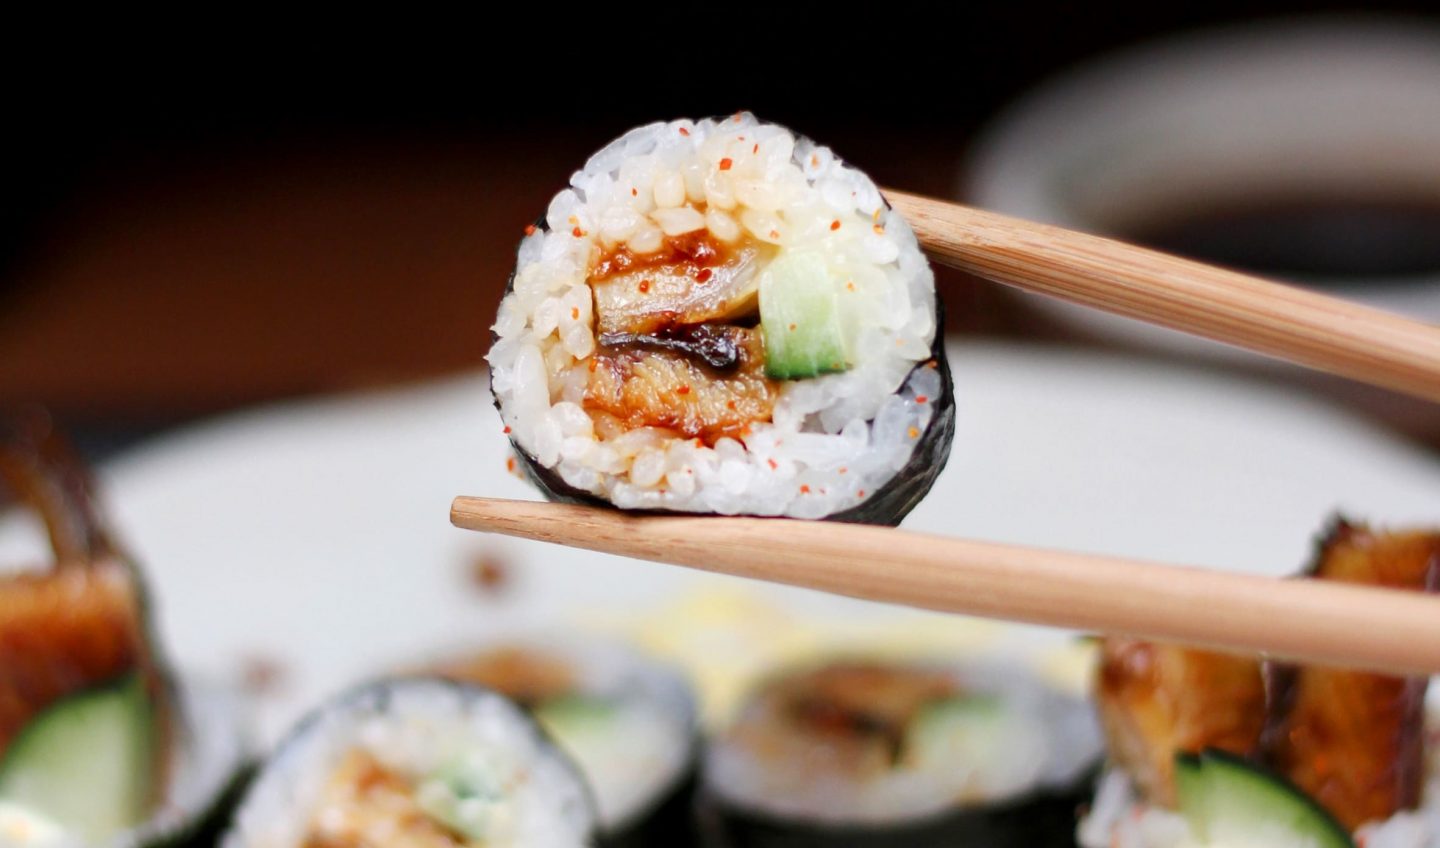 Asimilación Derivación grueso Es bueno el sushi para la dieta? | Monster Sushi Blog